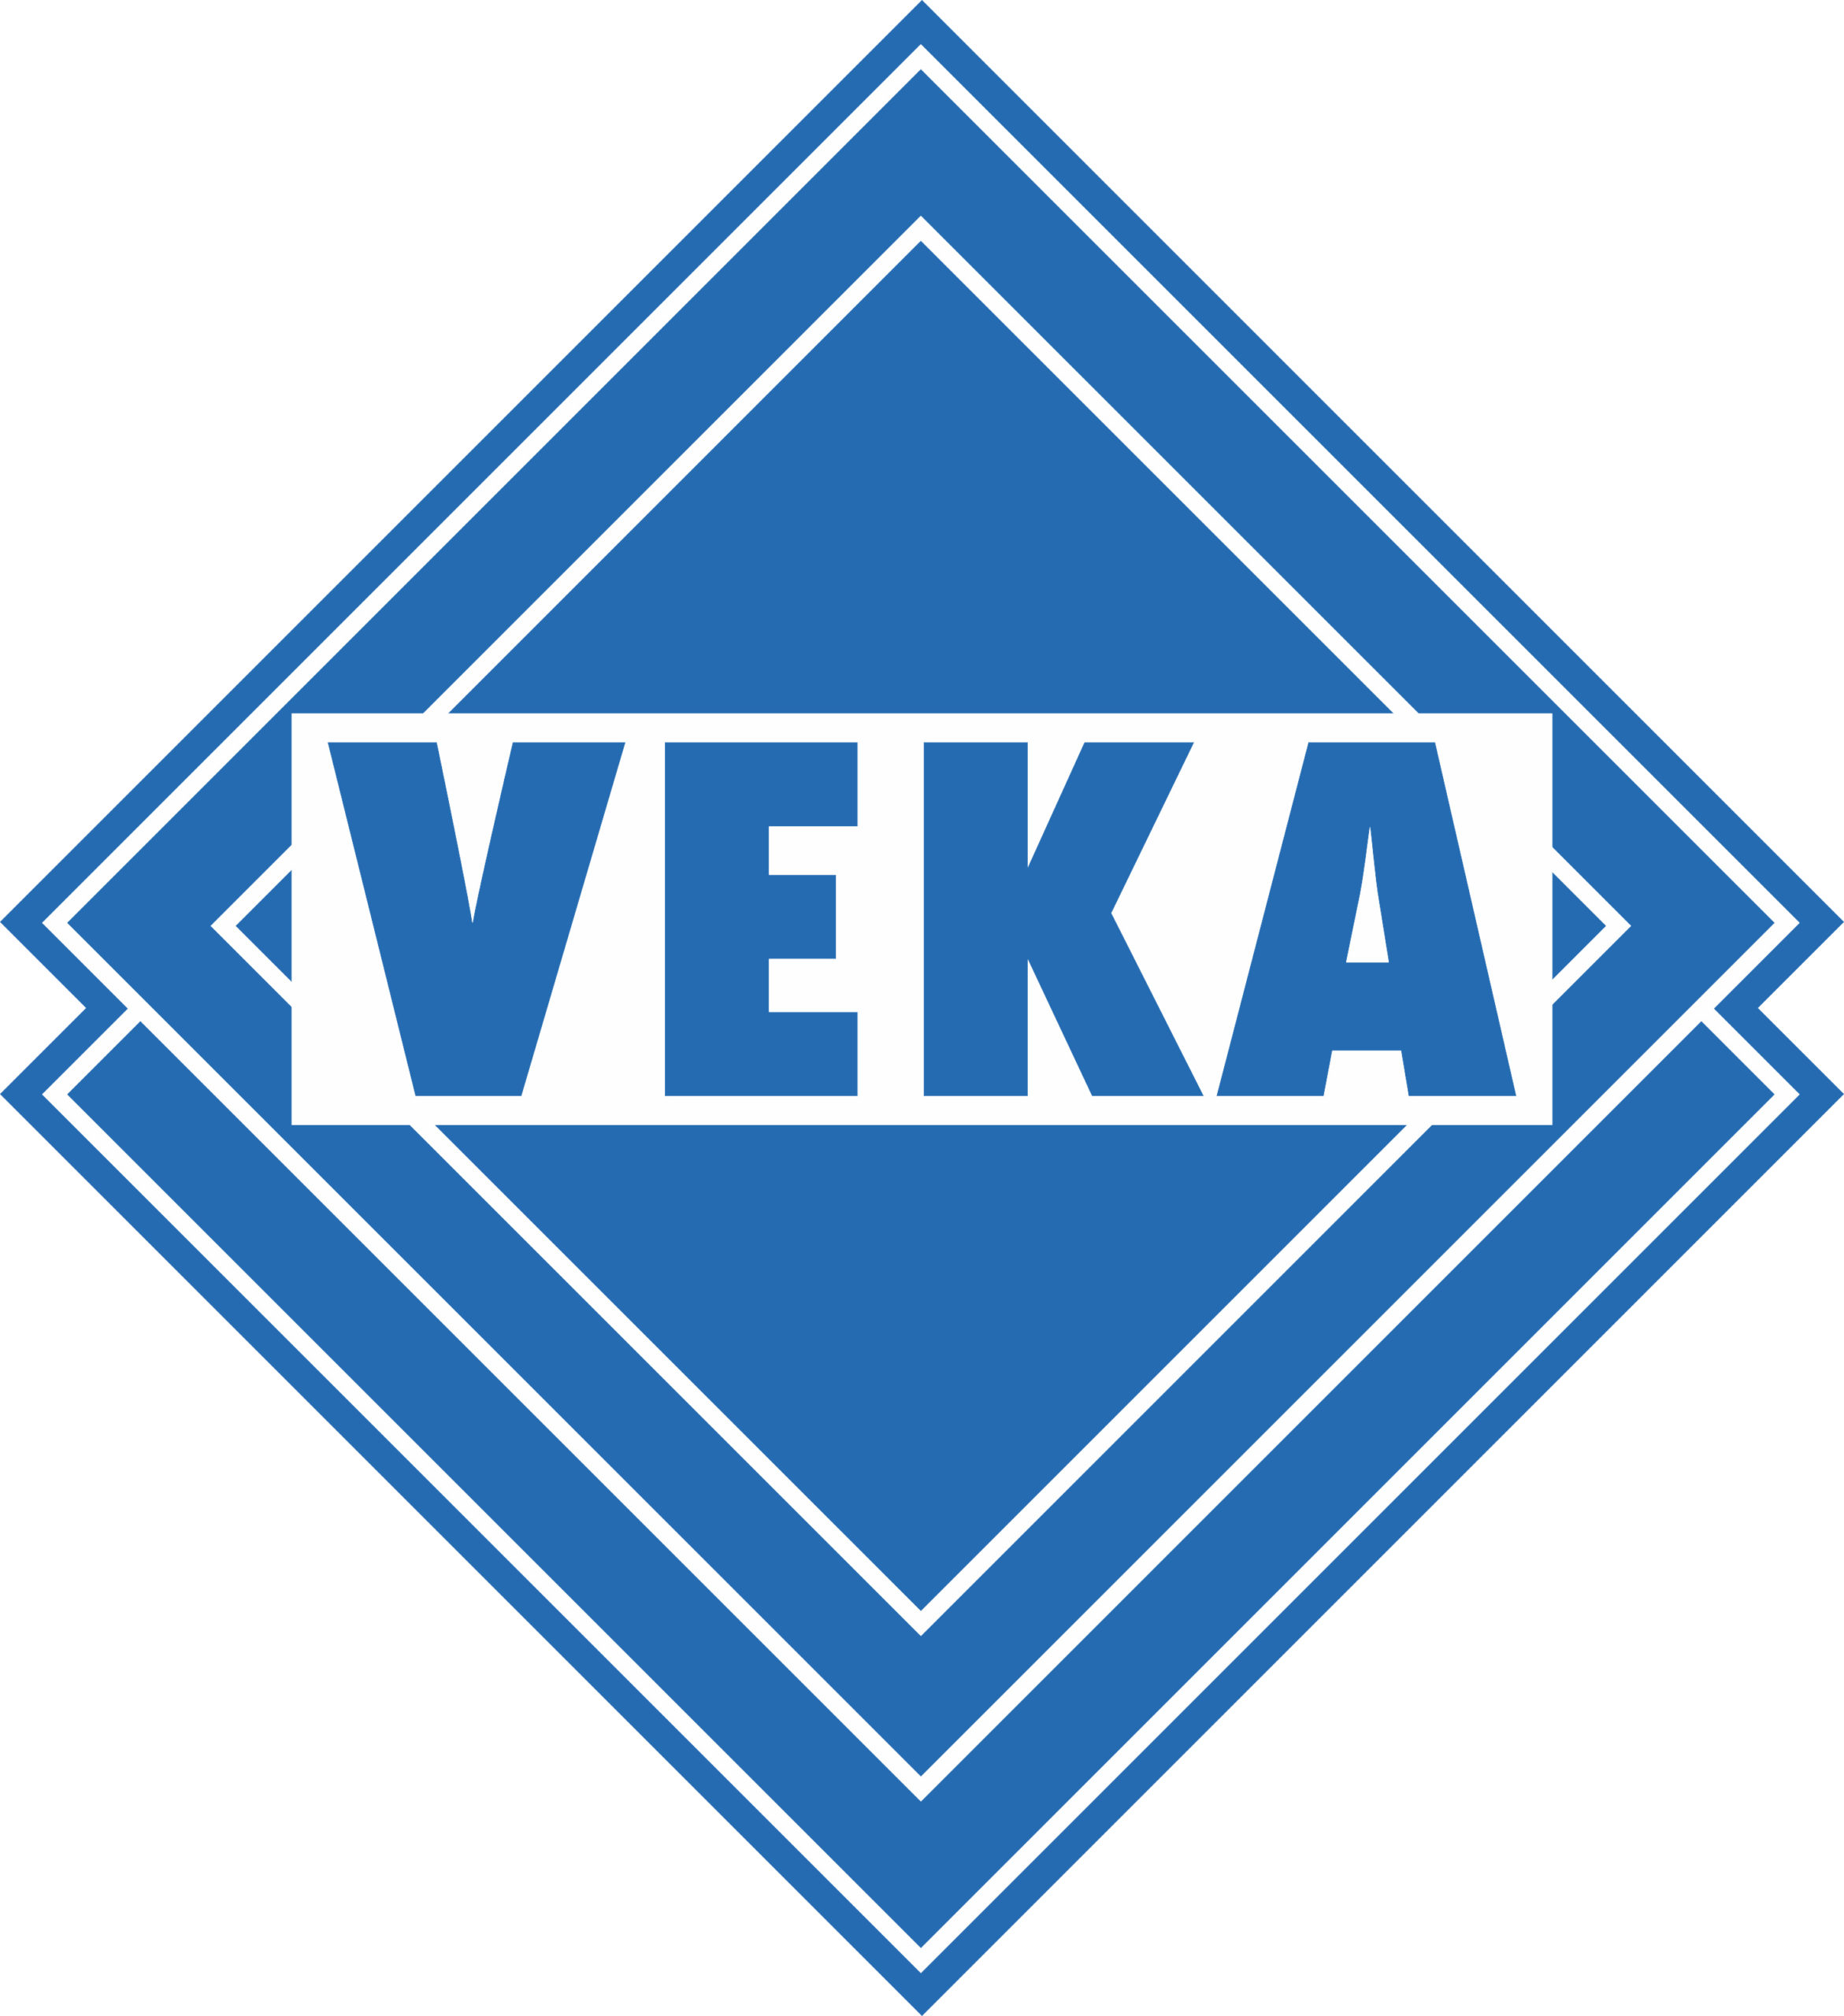 Wir verwenden die Produkte von Veka für Profilsysteme für Fenster, Türen, Rollläden sowie Schiebetüren aus Kunststoff